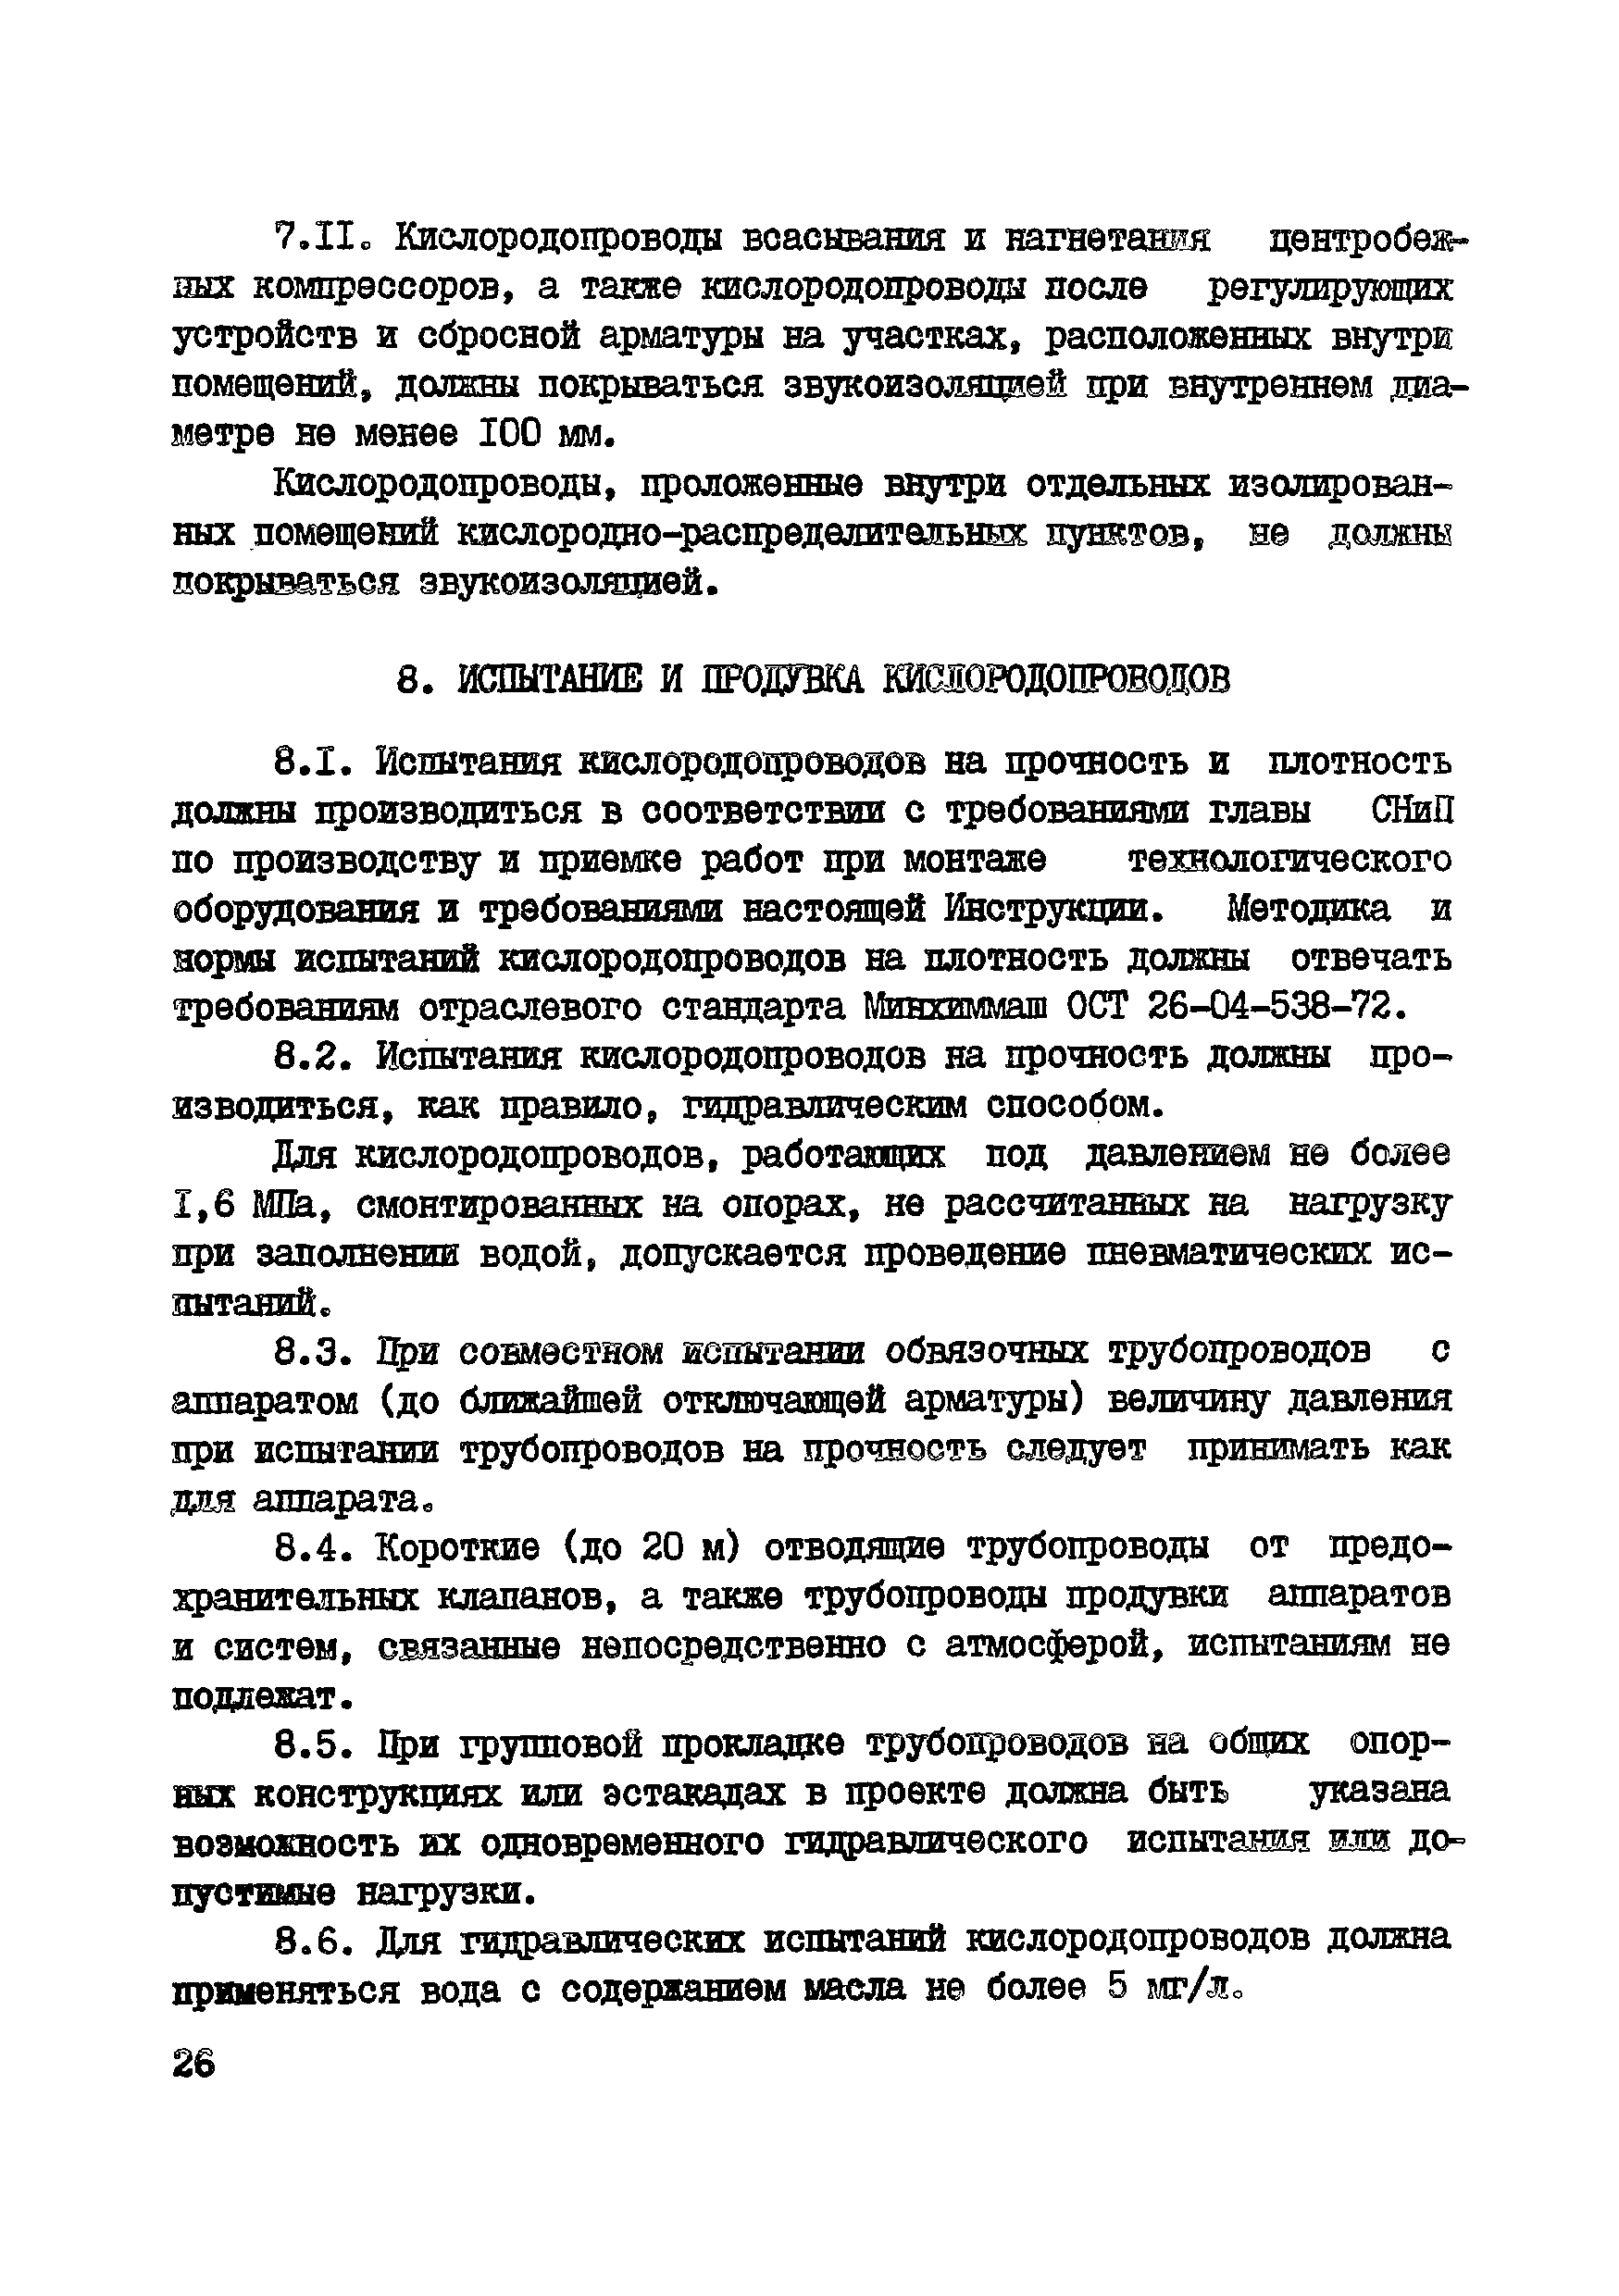 ВСН 10-83/Минхимпром